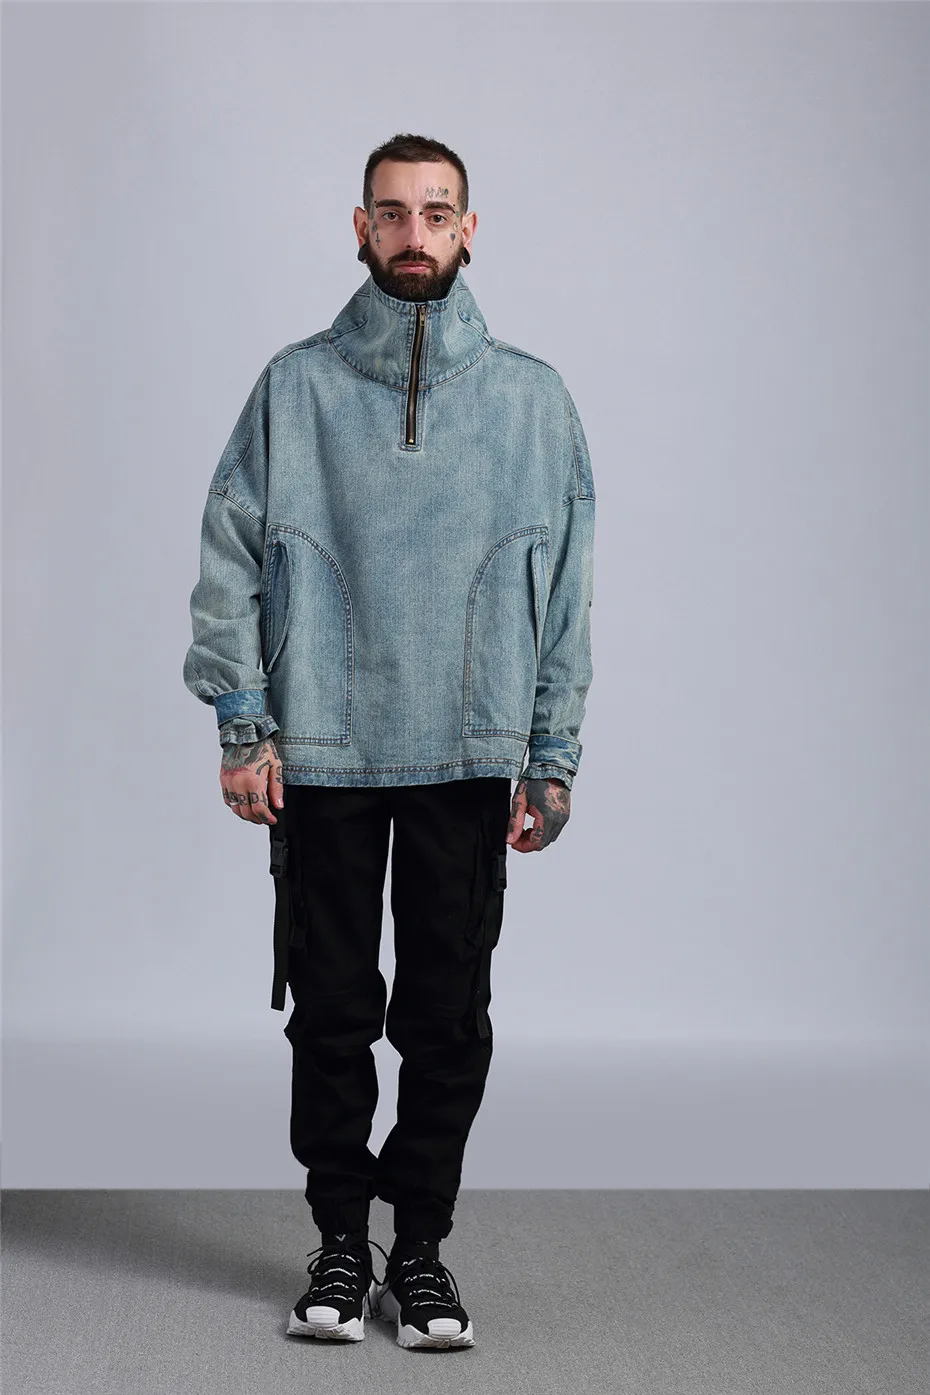 2018 хип-хоп мужские водолазки Джинсовые куртки негабаритных Проблемные Омывается джинсовые куртки пальто на весну-осень для мужчин YC1253